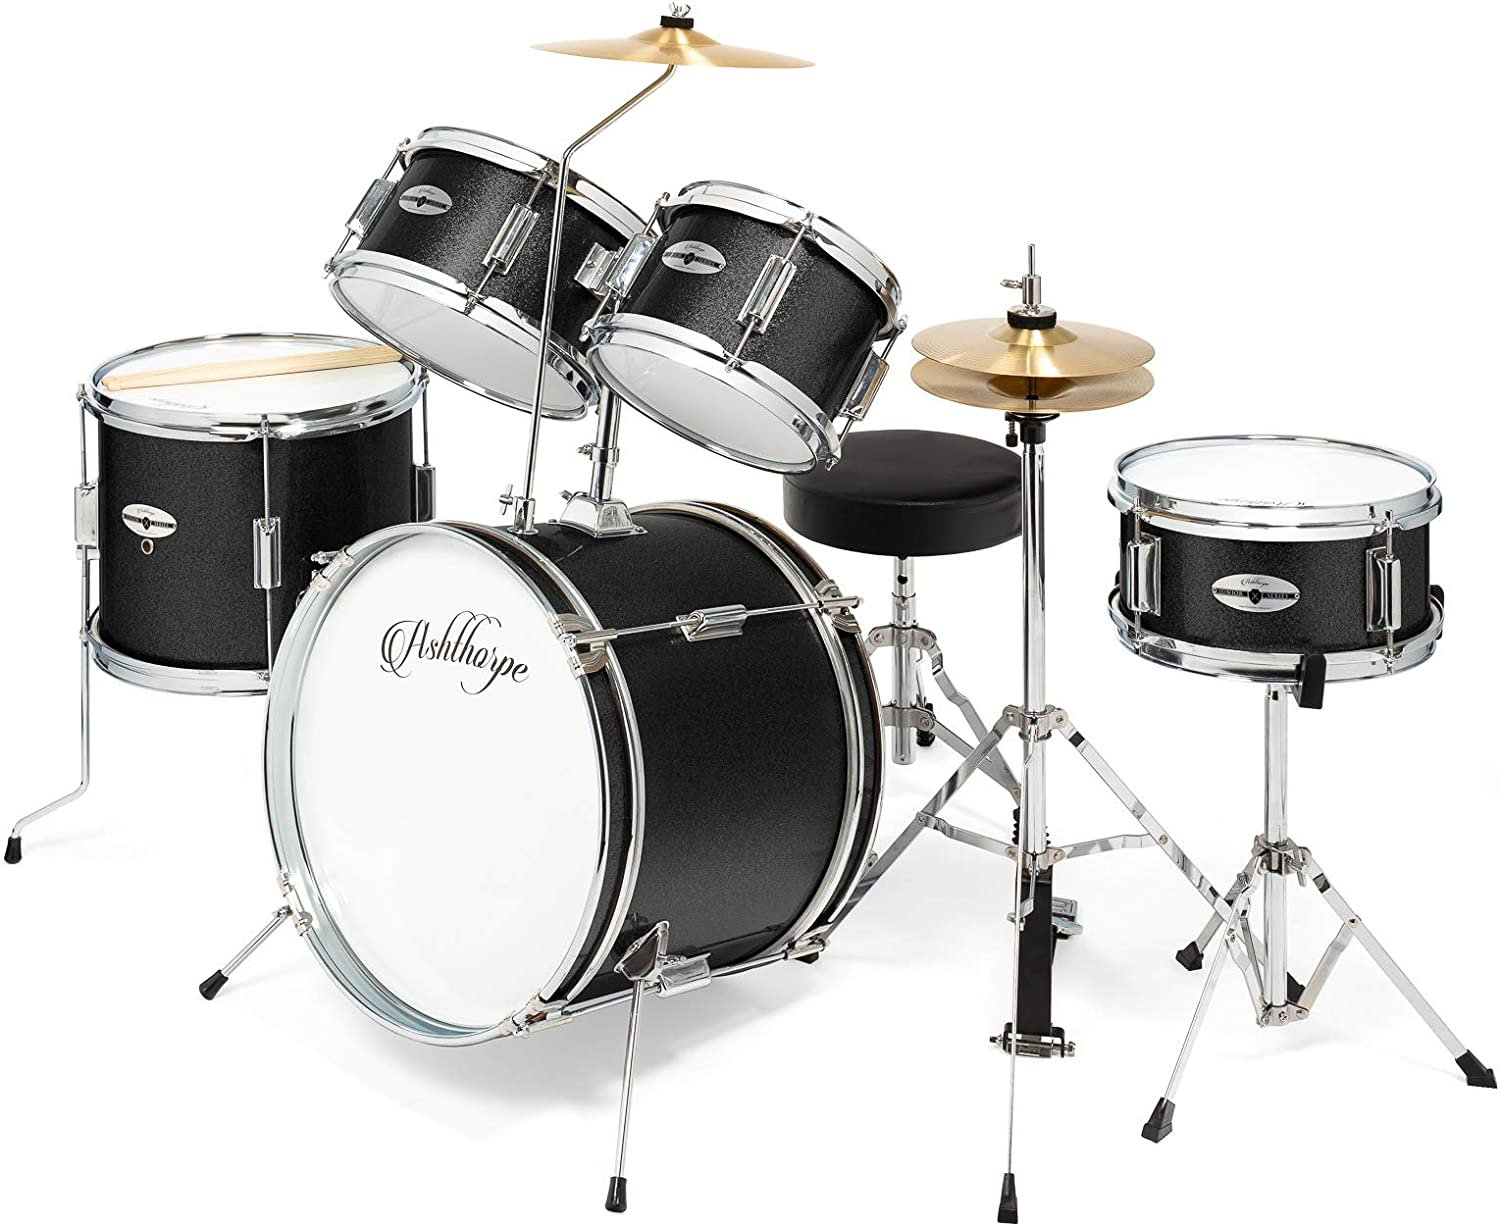 5-Piece Complete Junior Drum Set with Genuine Brass Cymbals – Advanced Beginner 1